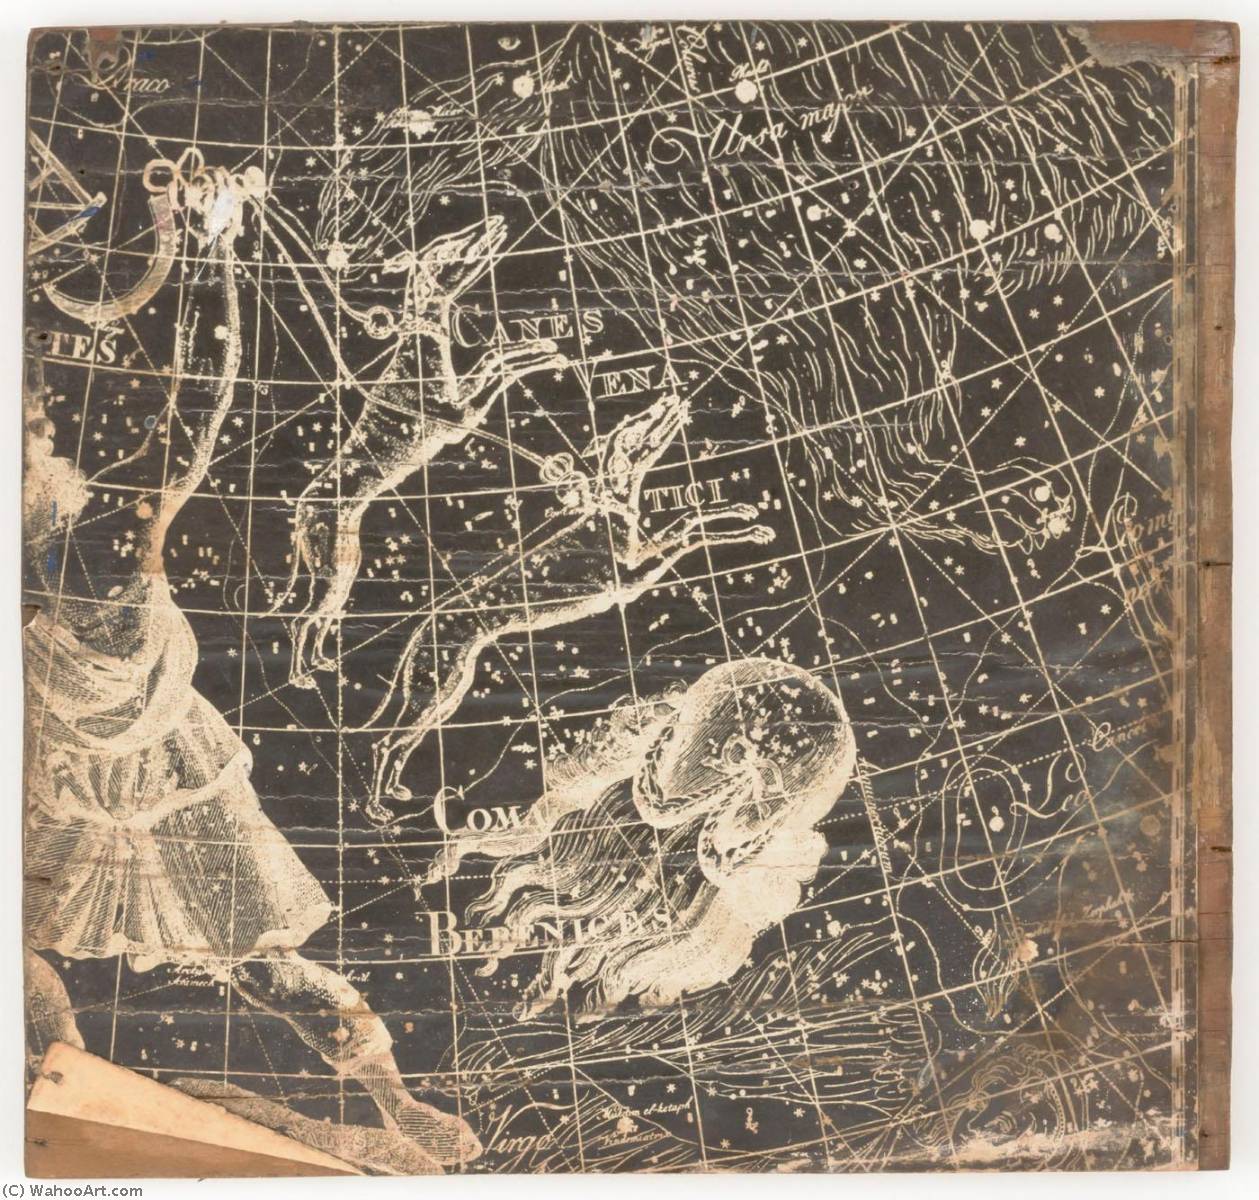 WikiOO.org - Enciklopedija dailės - Tapyba, meno kuriniai Joseph Cornell - Untitled (stellar map featuring Canis Vena Tici and Coma Berenices)